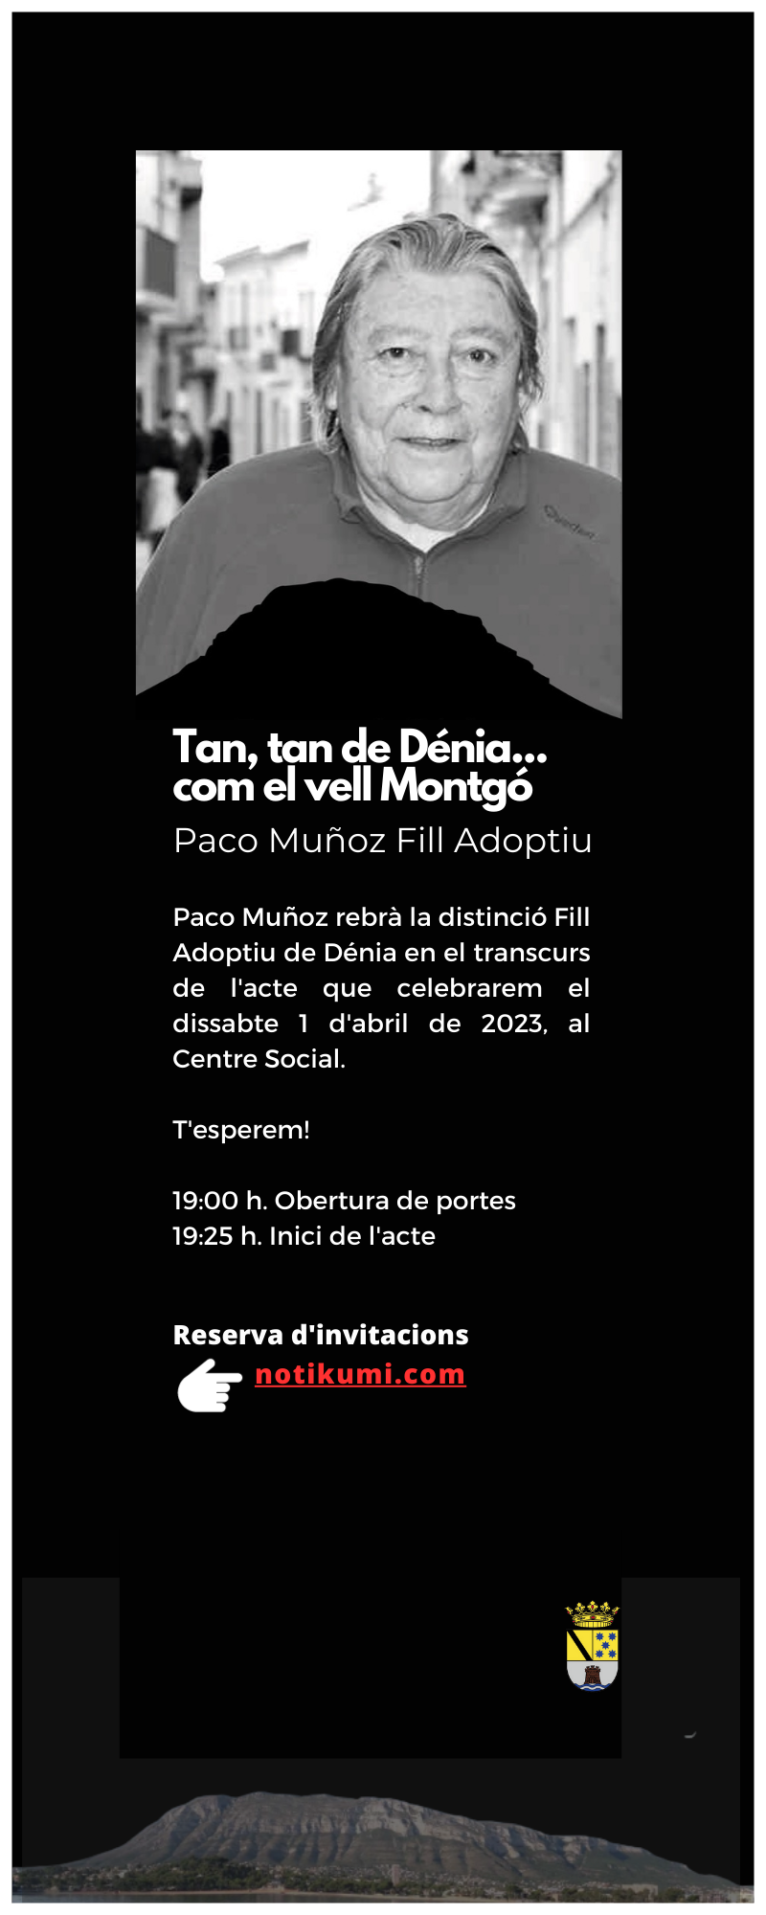 Invitación de reserva para el acto de Paco Muñoz